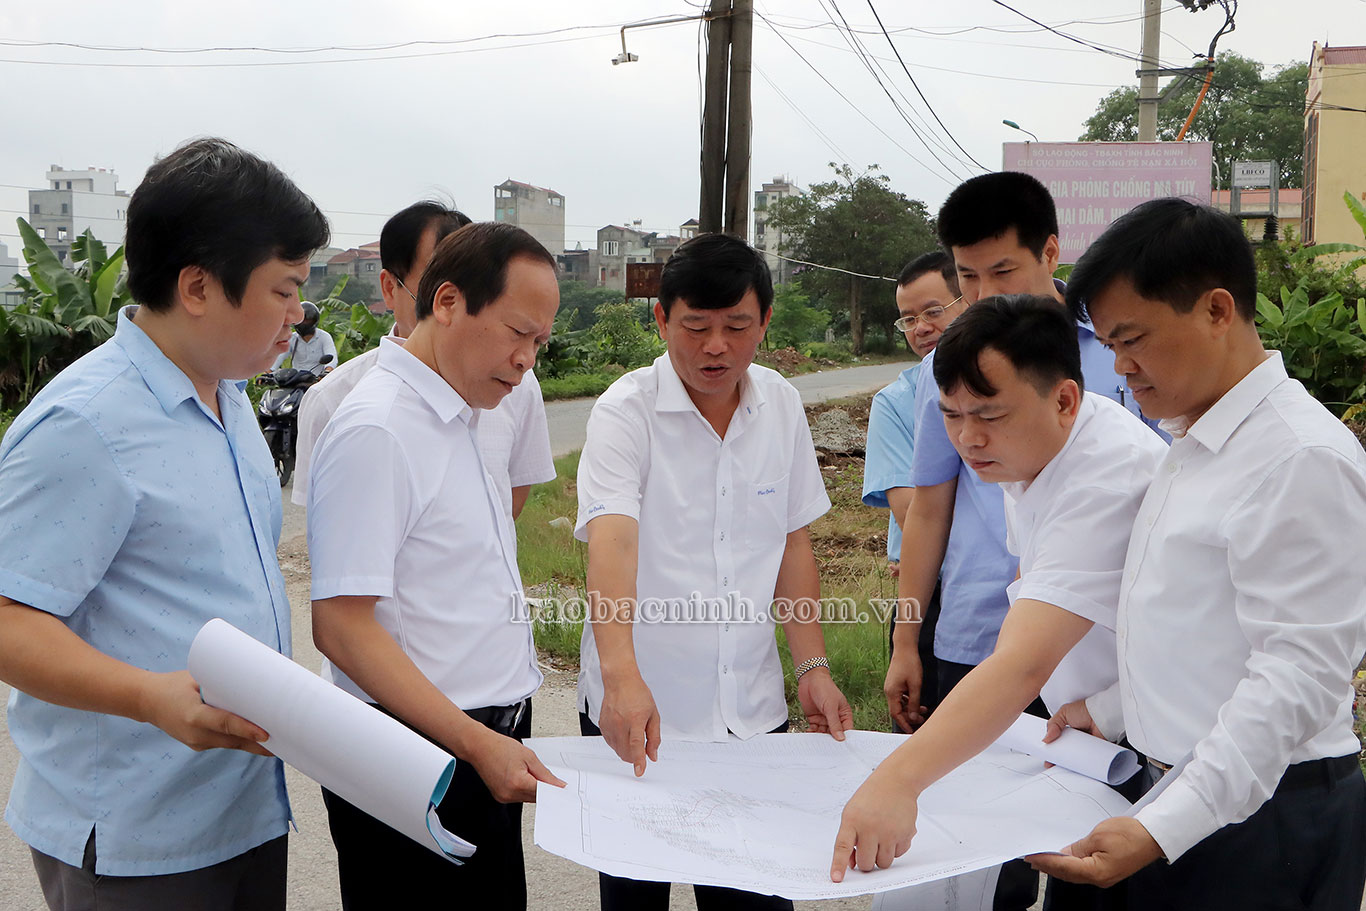 Phó Chủ tịch UBND tỉnh Ngô Tân Phượng kiểm tra công tác GPMB một số dự án giao thông tại Từ Sơn